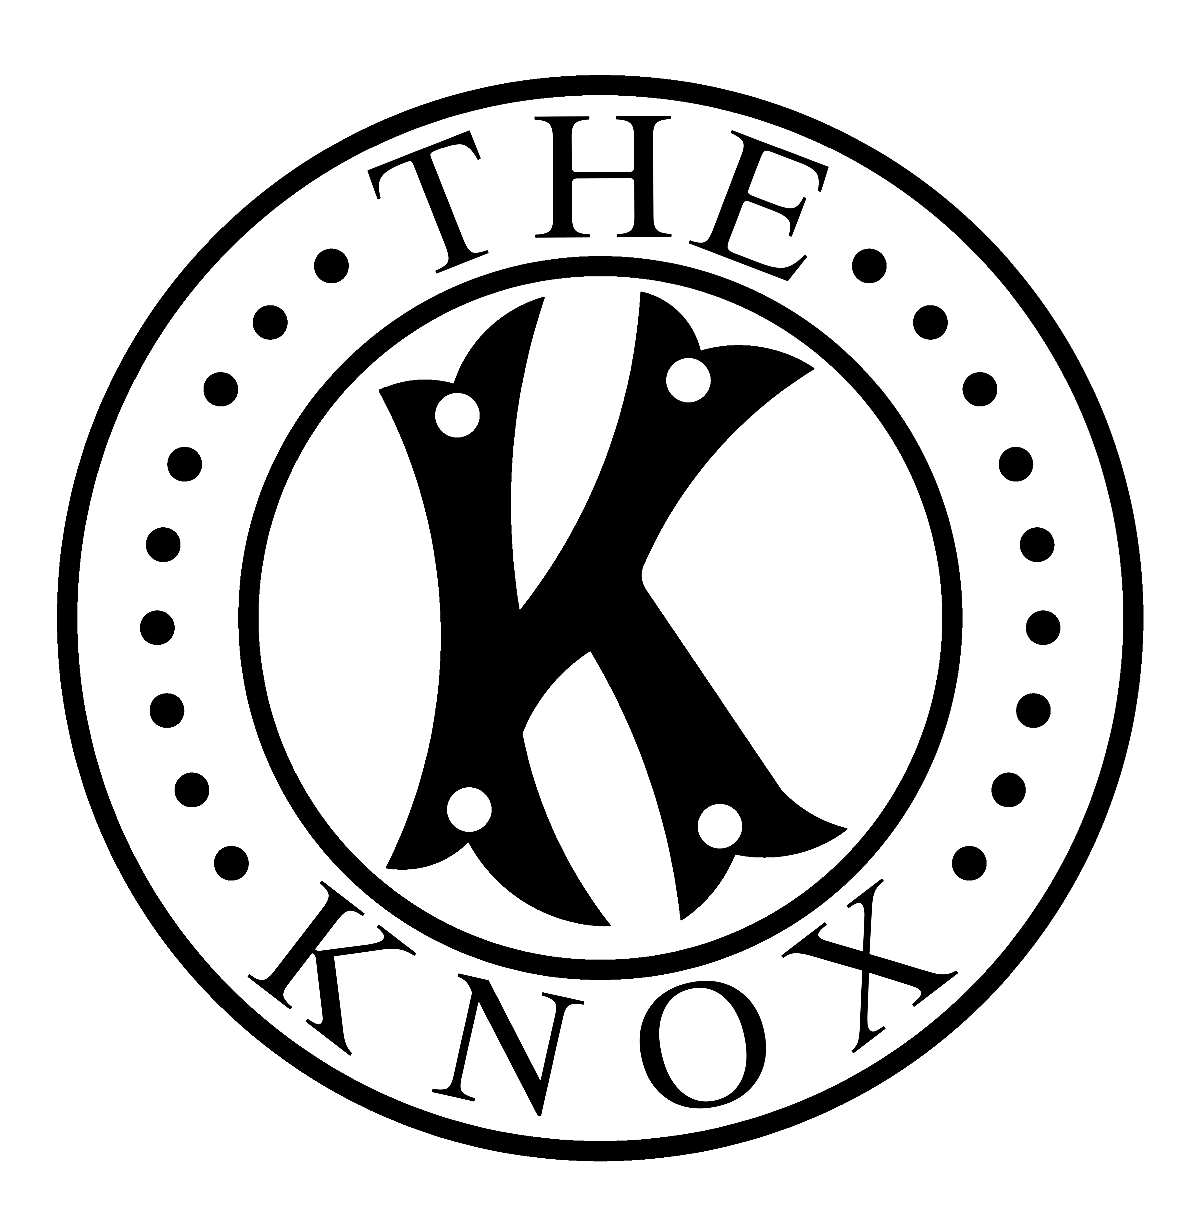 The Knox logo